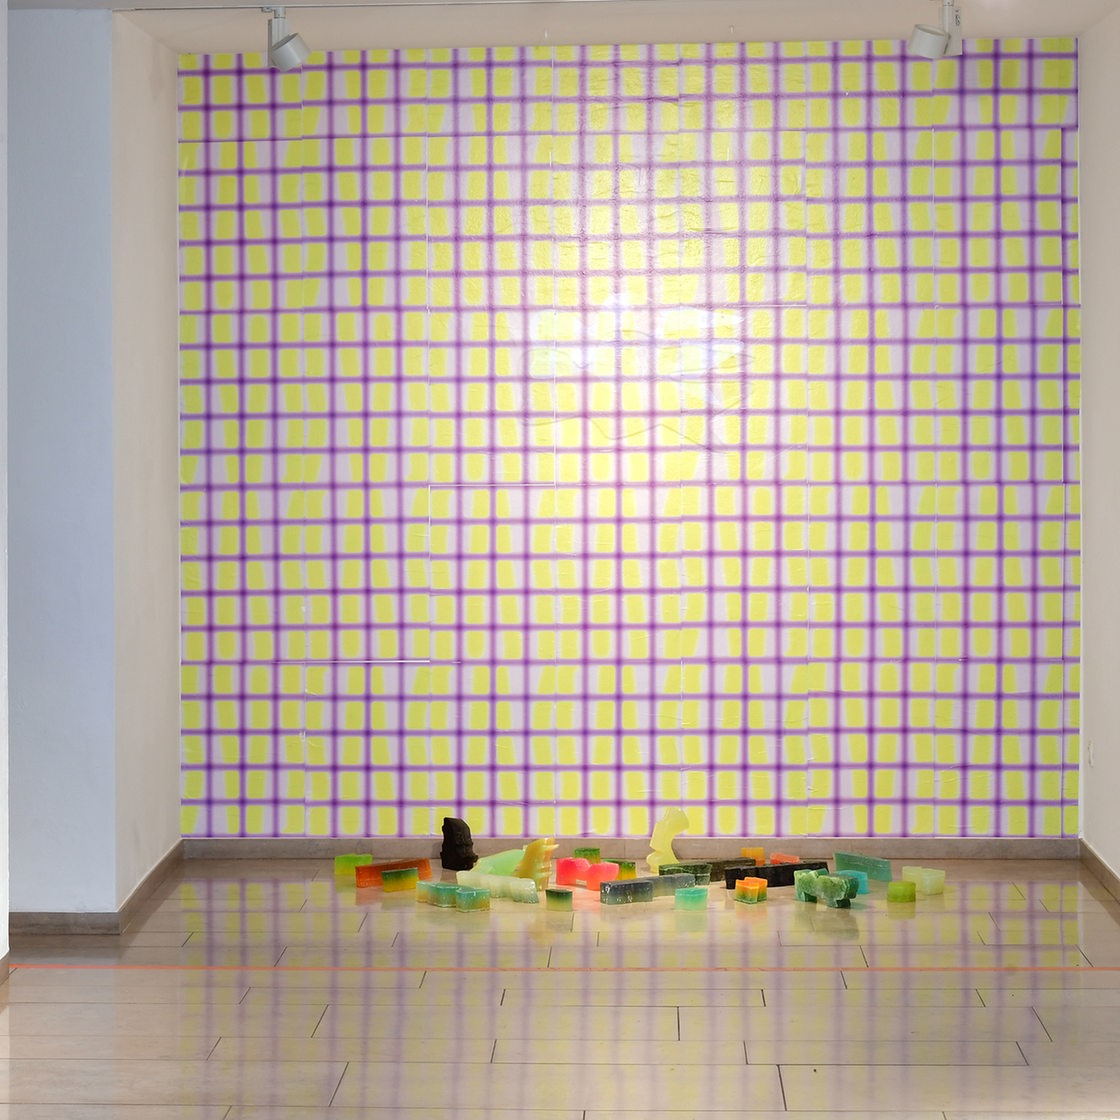 Bilder und Installationen der Ausstellung "Weaving Echoes" im Gerhard-Marcks-Haus